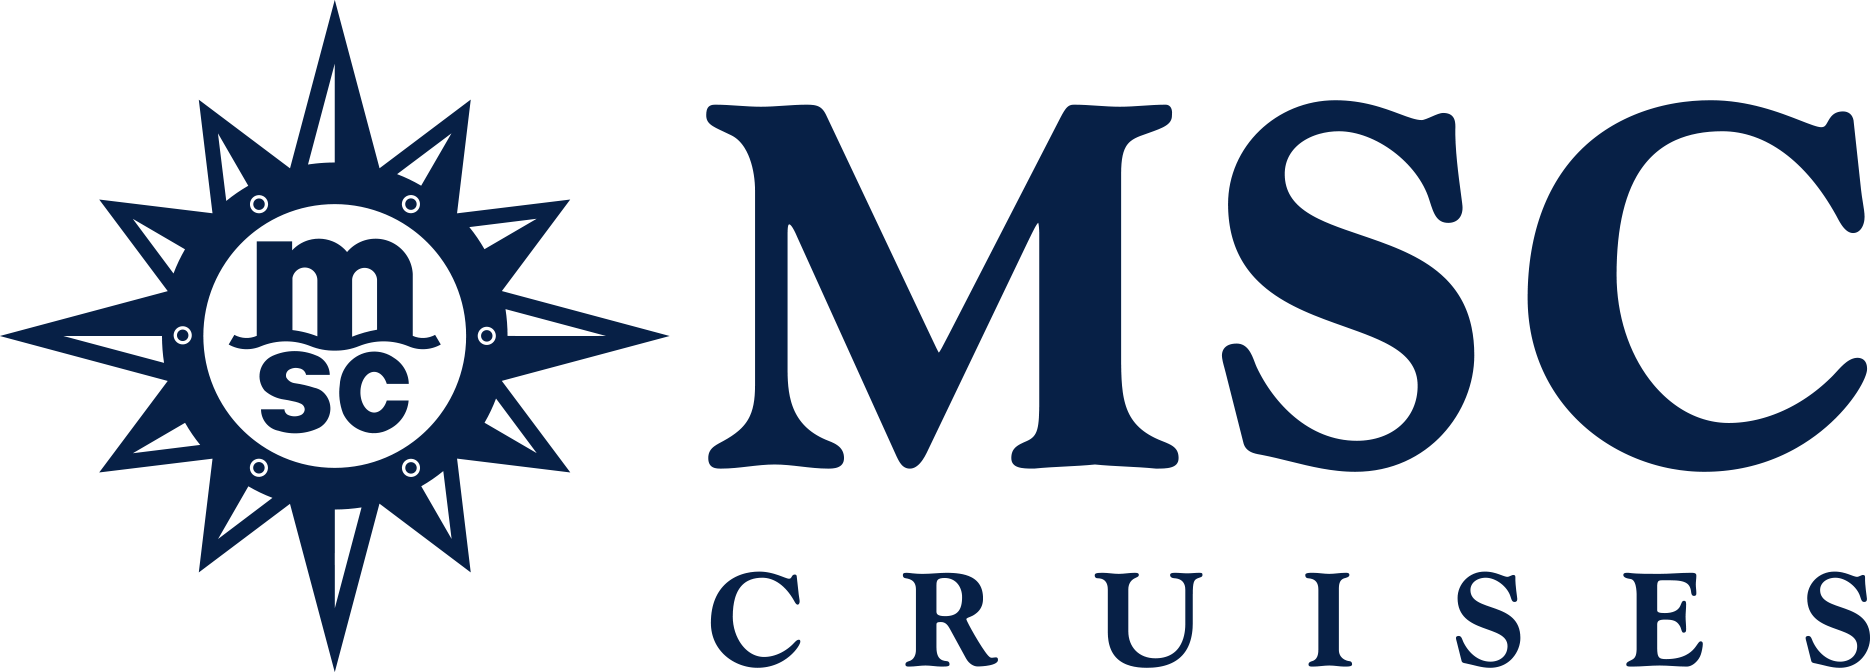 MSC Fantasia Reederei Logo